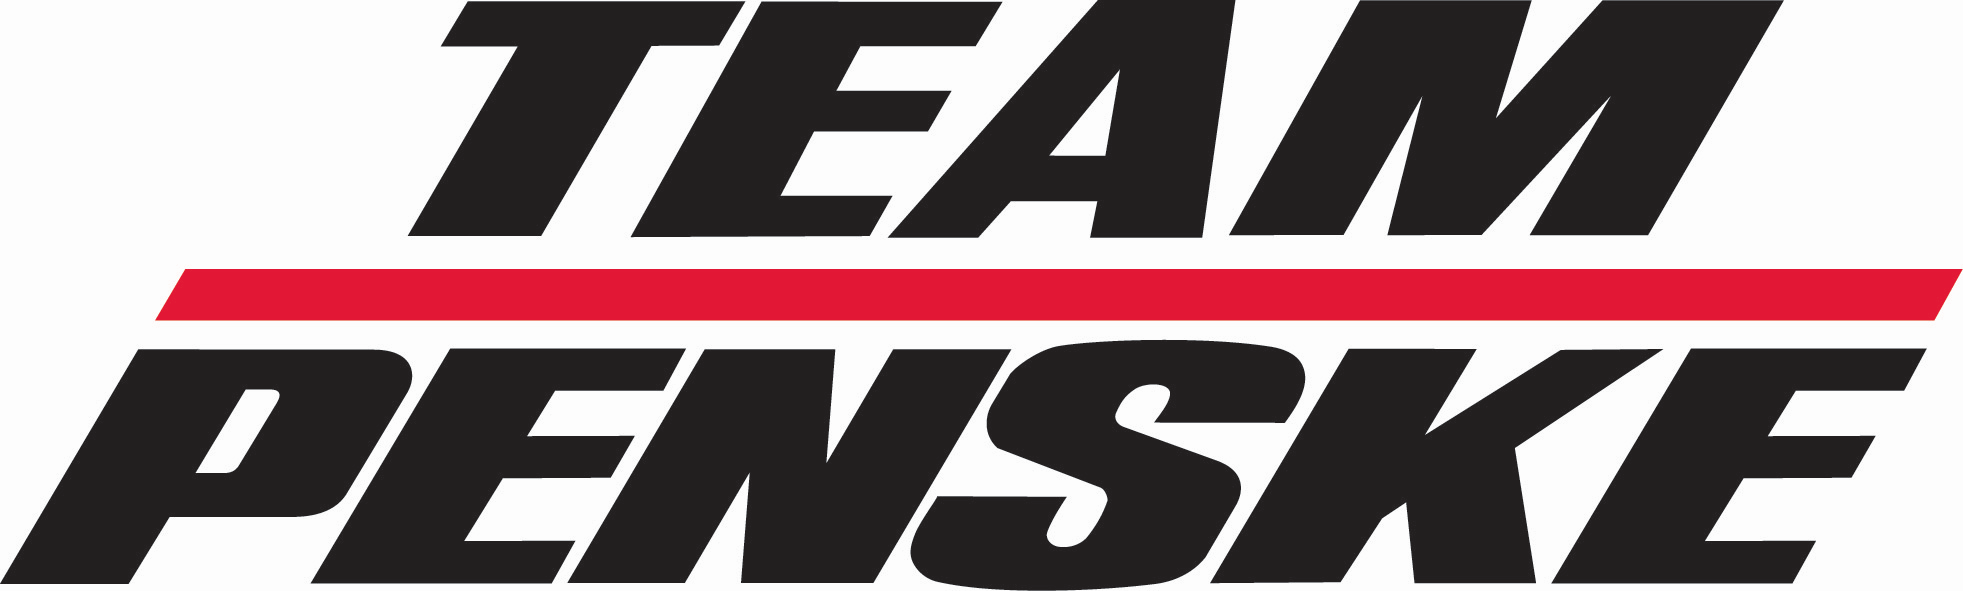 Penske Logo - Team Penske Primary Logo (NASCAR) Creamer's Sports